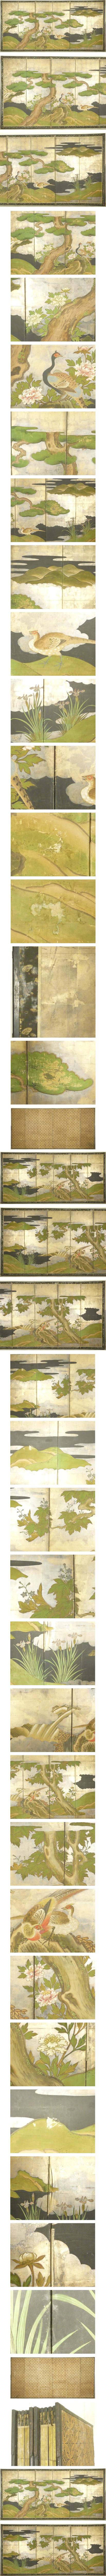 【超值特卖】金台肉筆 松に雉図 屏風 高さ 約172cm 六曲一双 無落款 花鳥図 日本画 花鳥、鳥獣